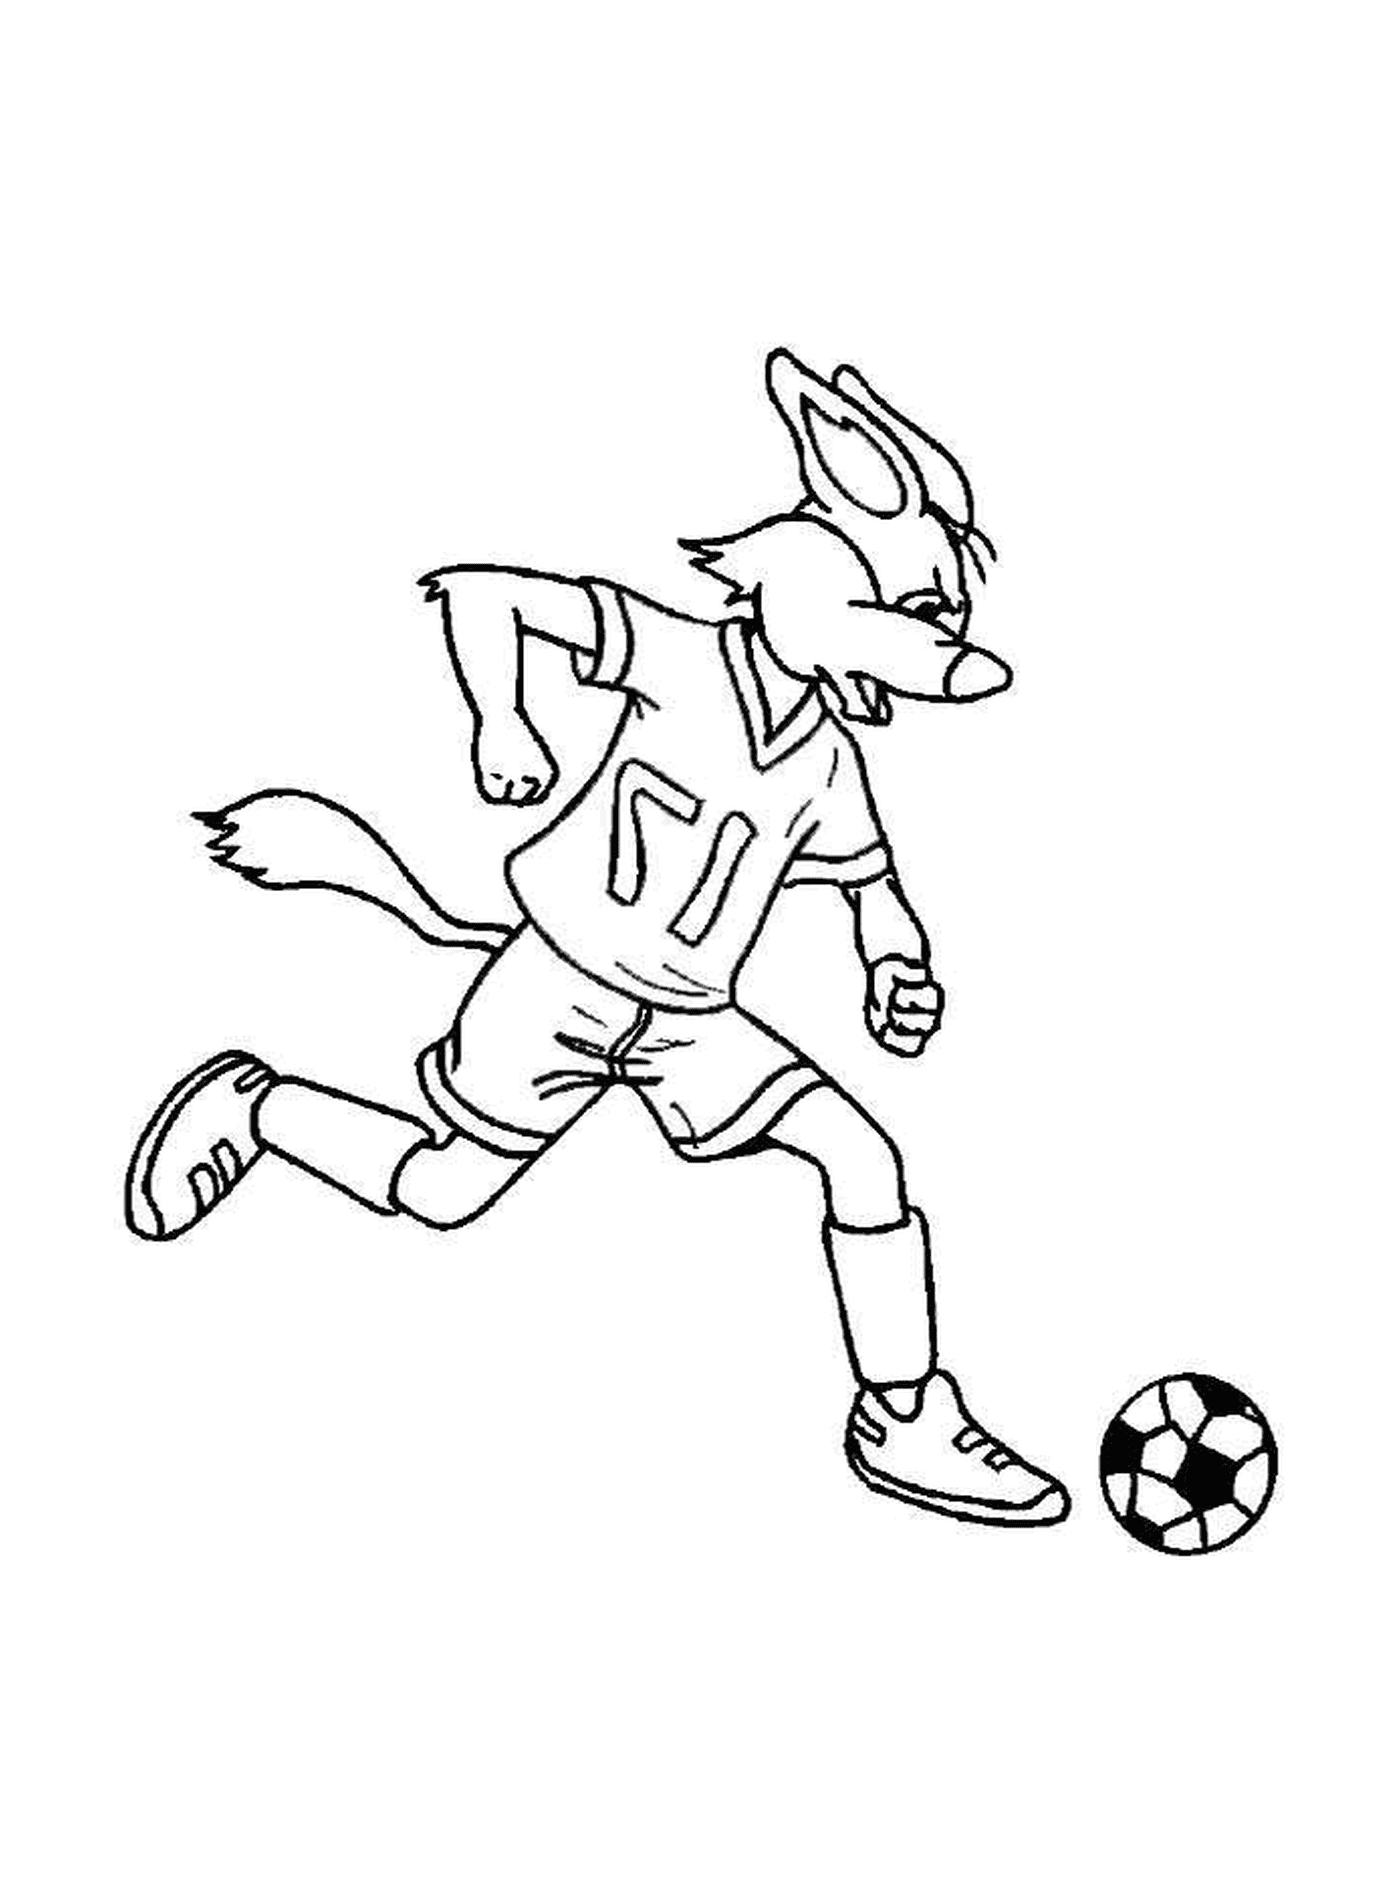  A rabbit plays football 